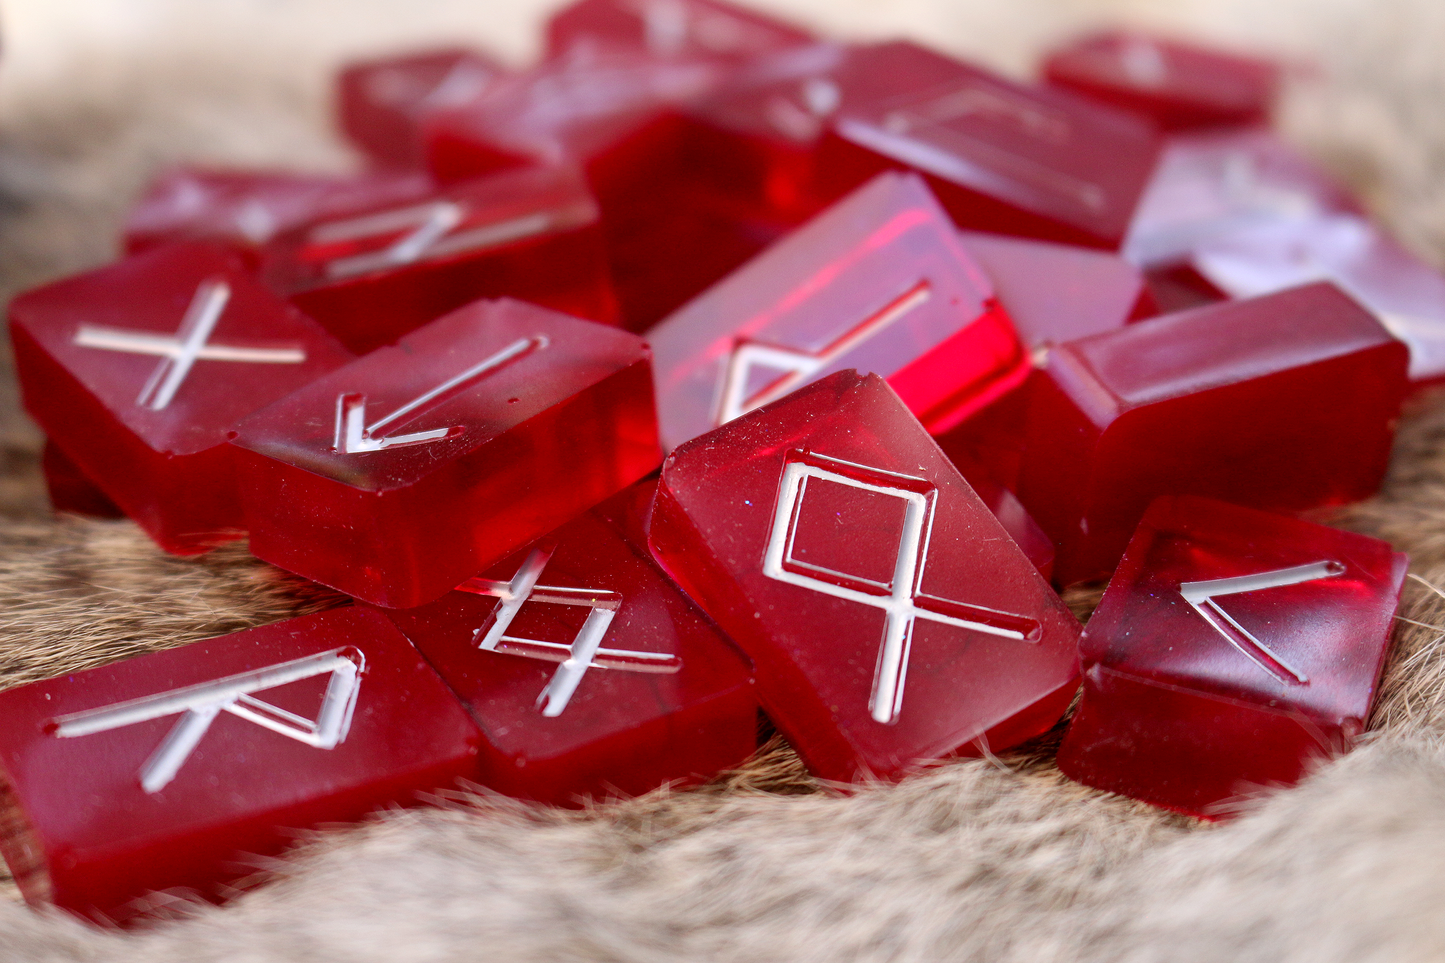 Coagulated Red Rune Set